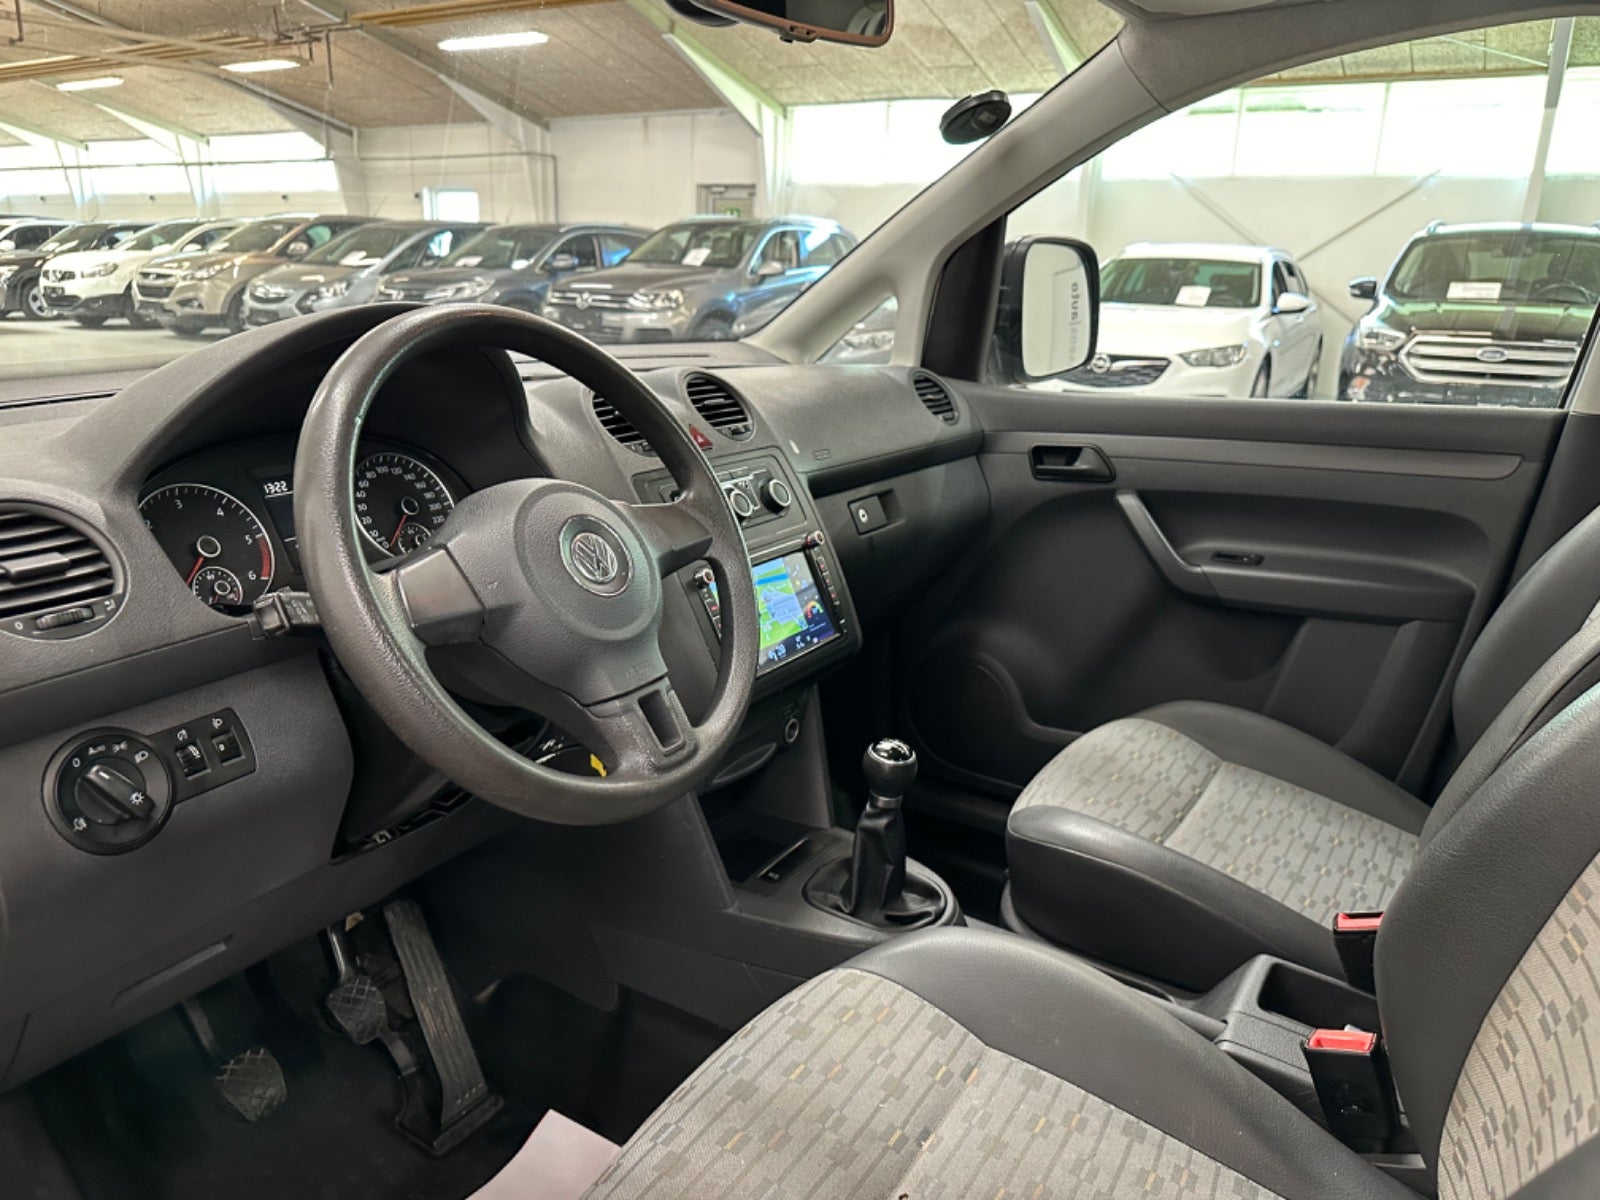 VW Caddy Maxi 2011